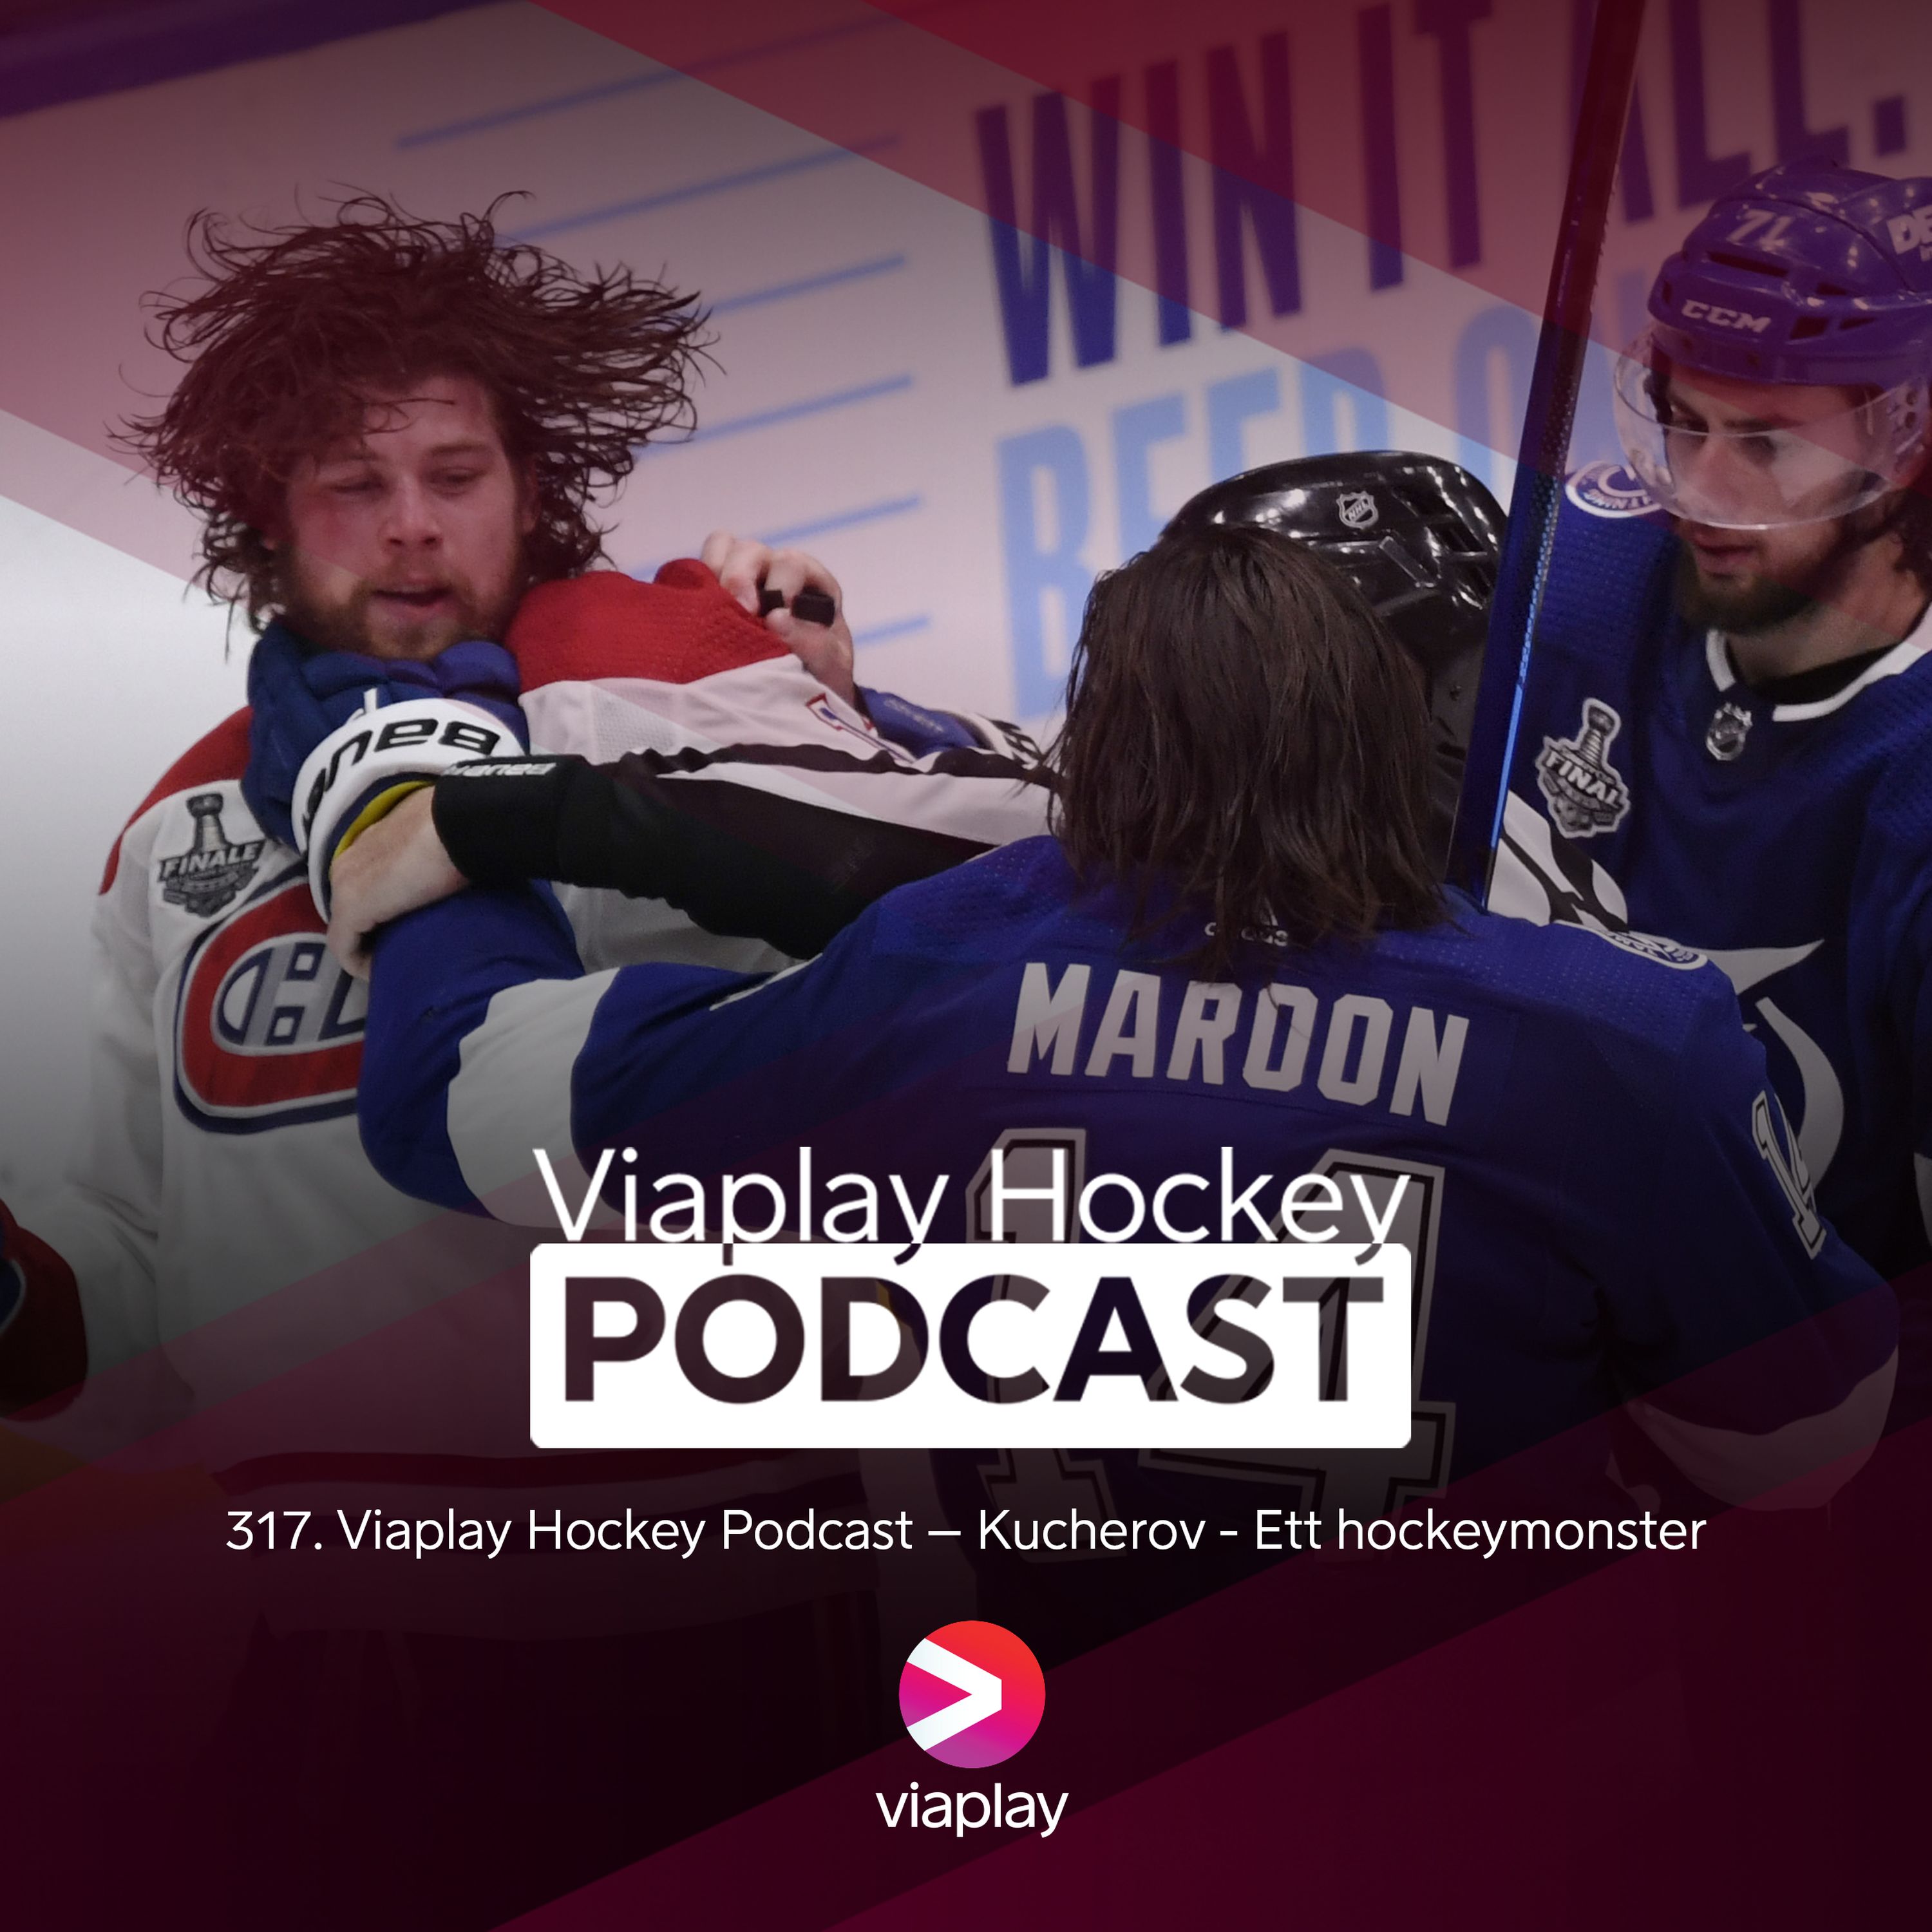 317. Viaplay Hockey Podcast – Kucherov, ett hockeymonster